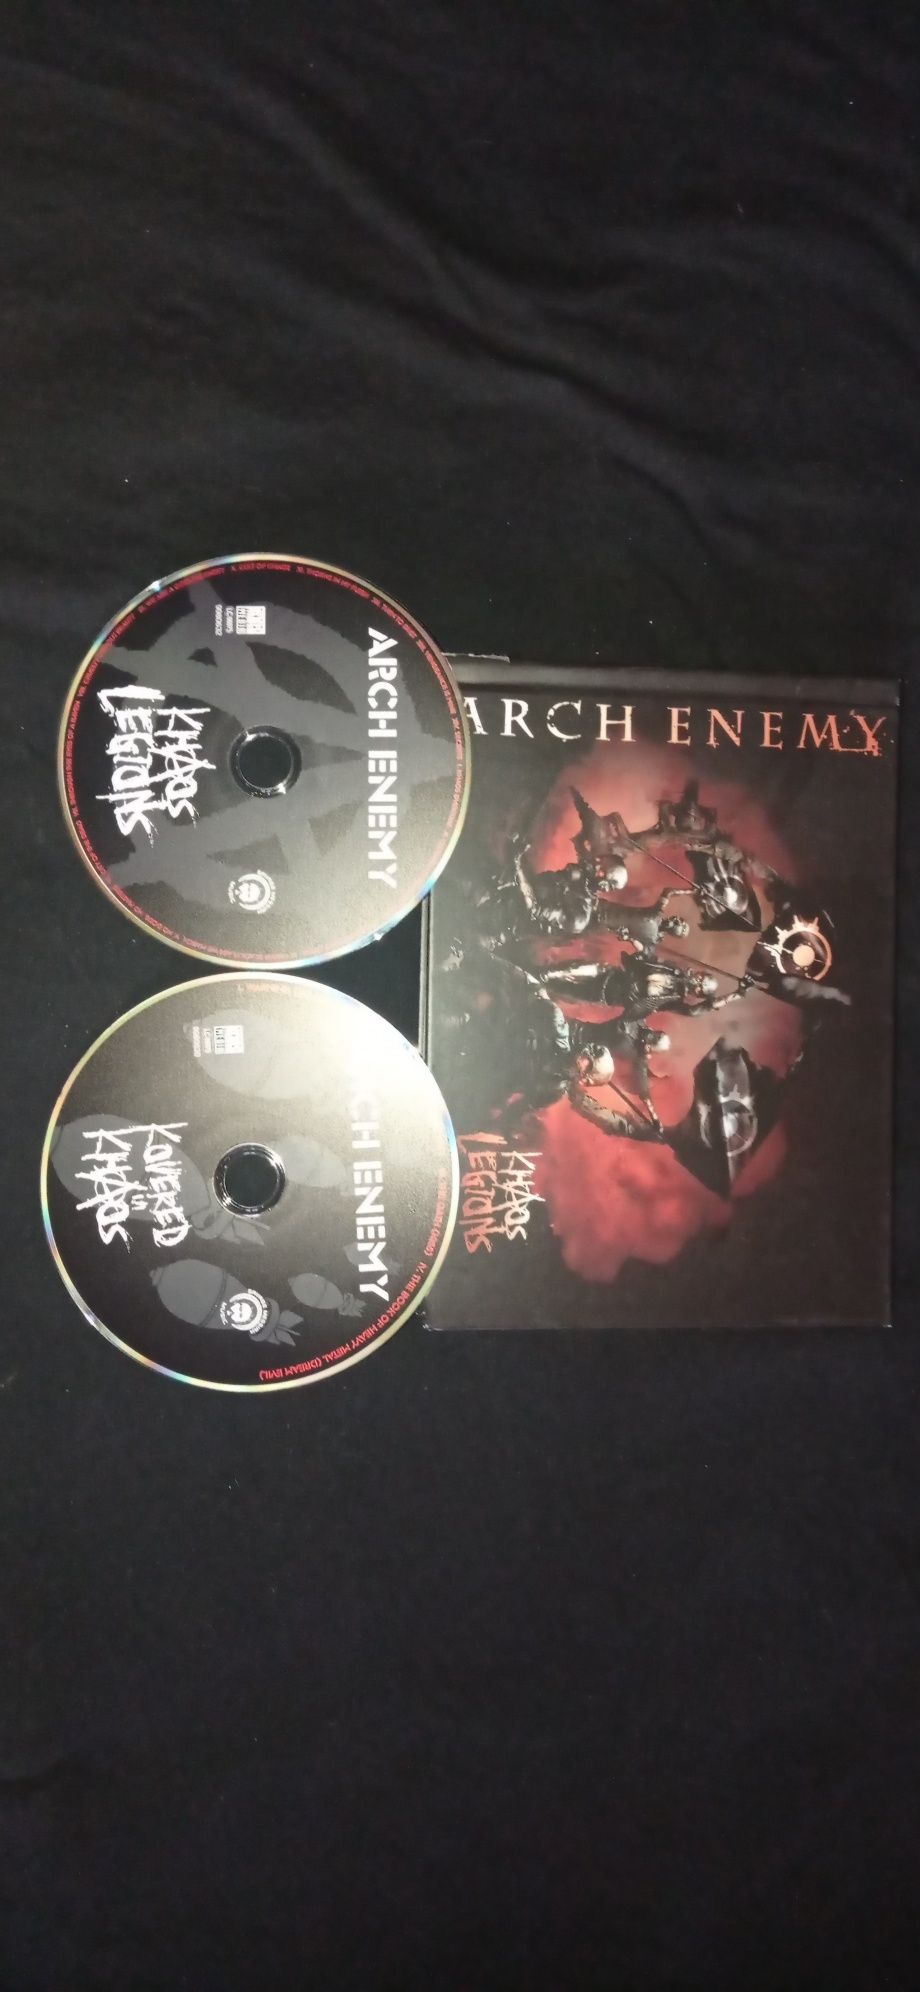 Arch Enemy - Khaos Legions 2CD limited edition mediabook